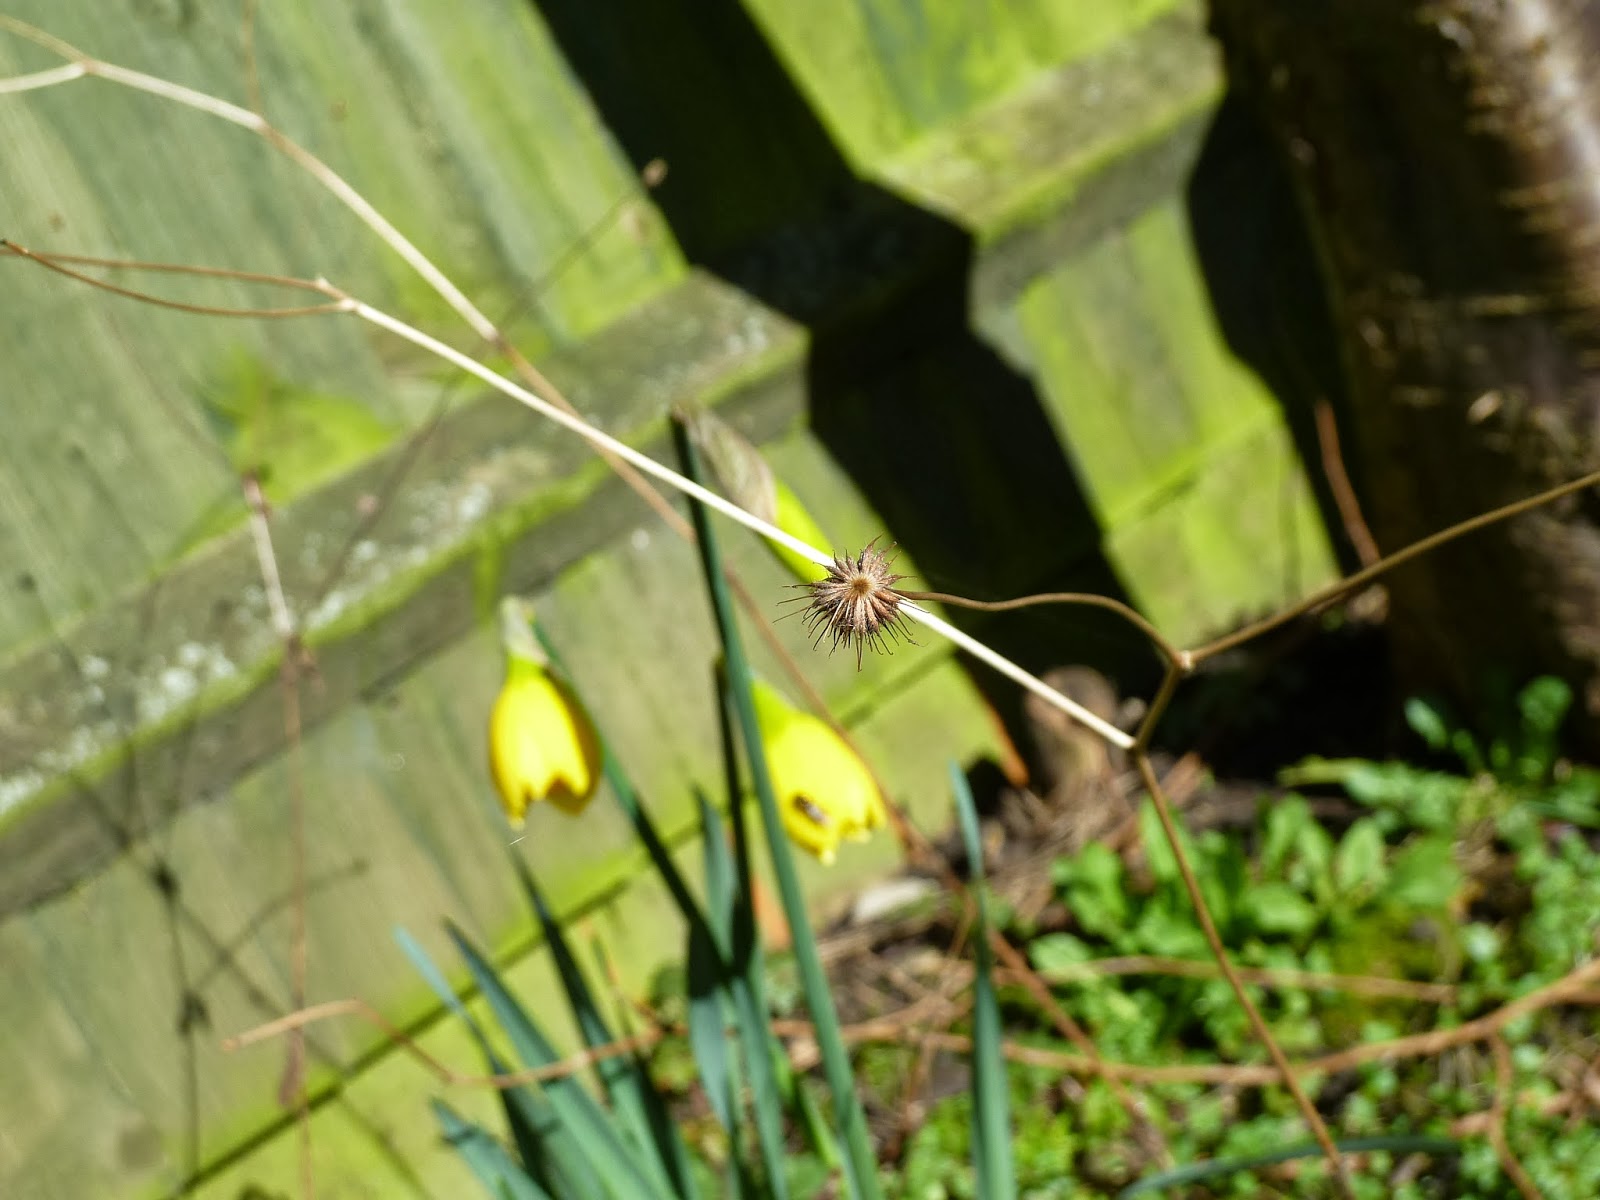 Seedhead and daffodil buds